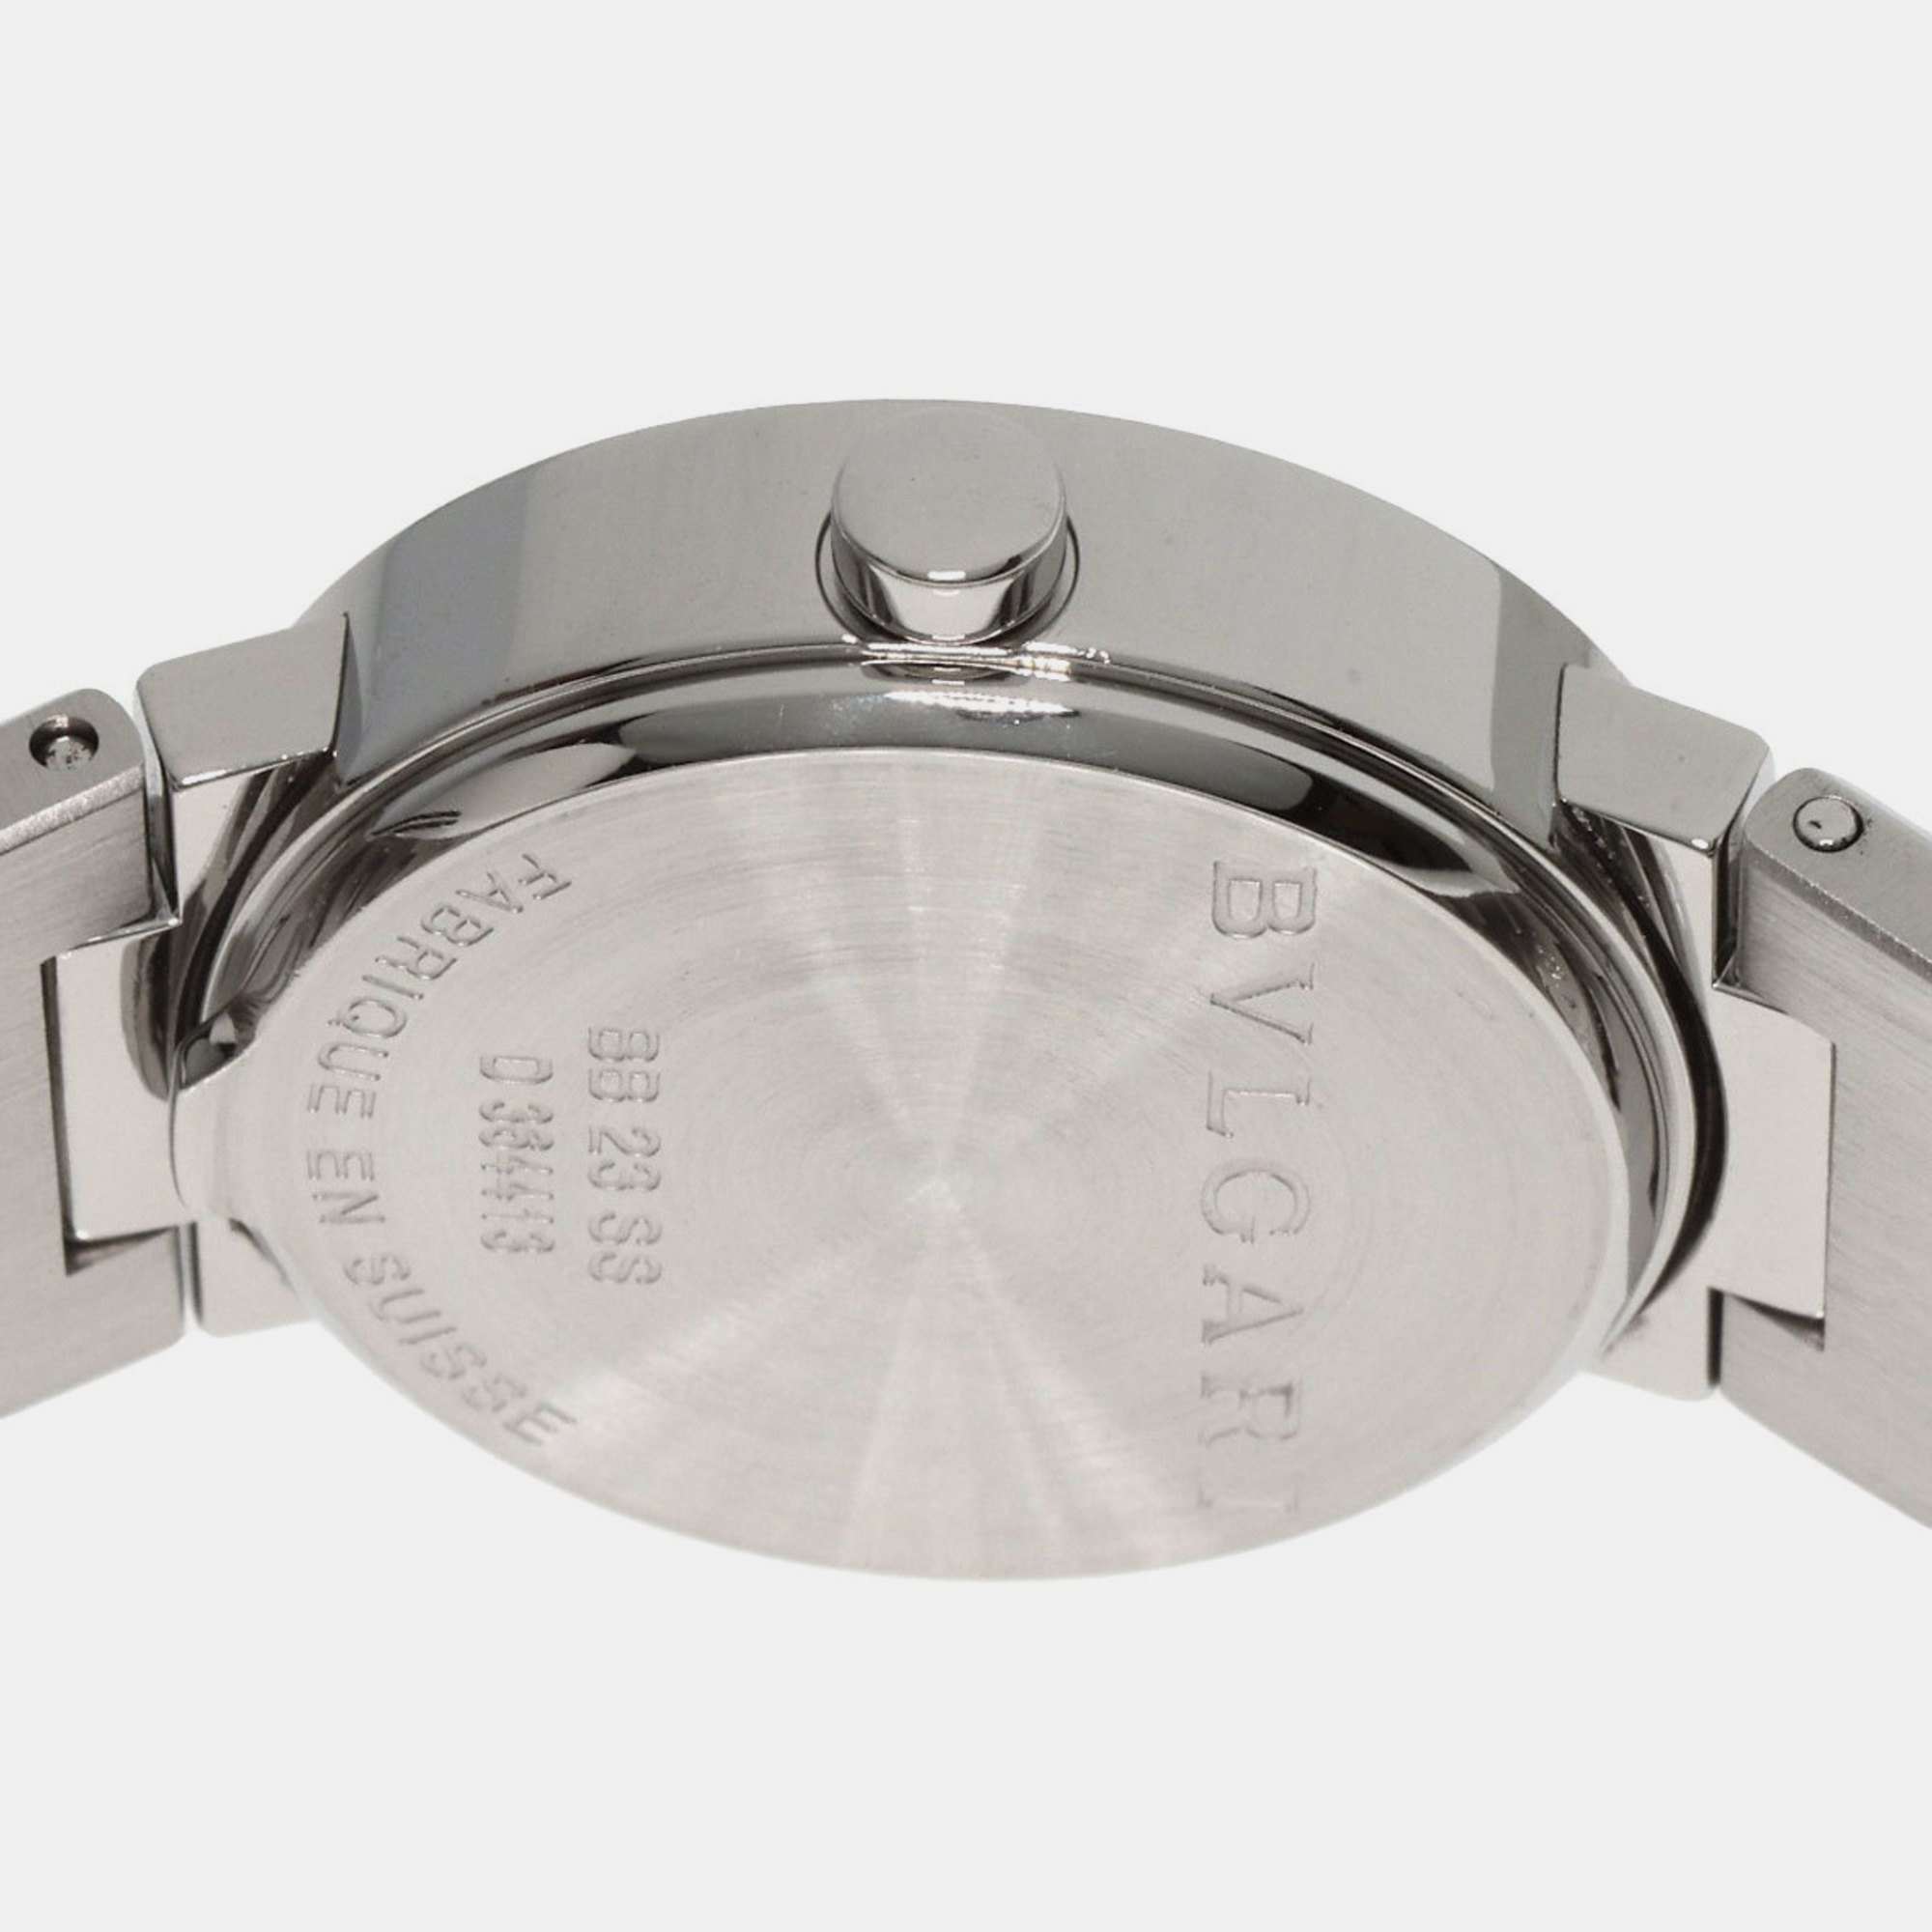 Bvlgari Black Stainless Steel Bvlgari Bvlgari BB23SS Quartz Women's Wristwatch 23 Mm